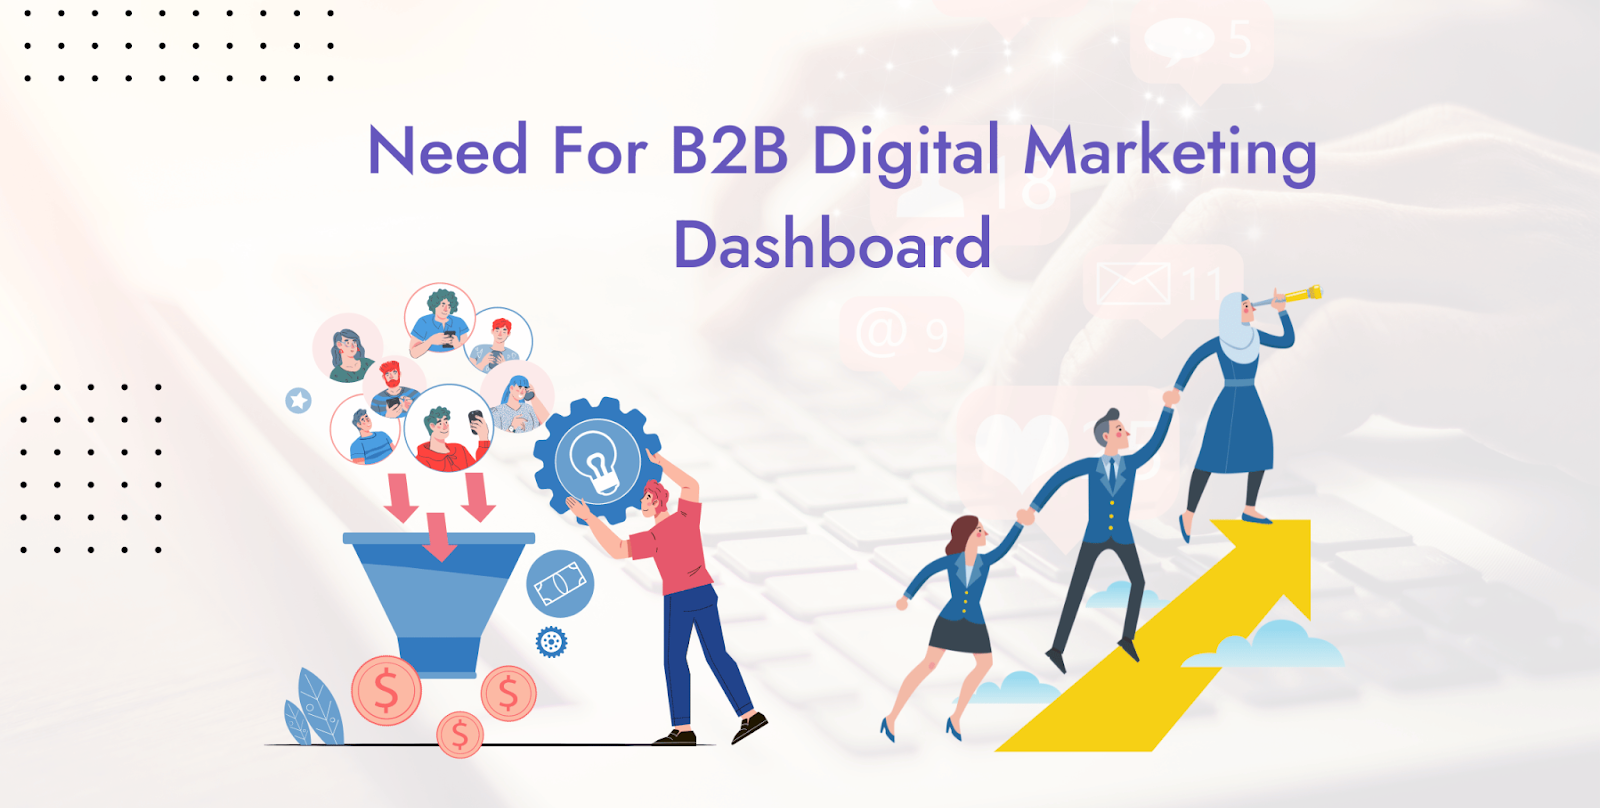 Need for B2B Digital Marketing Dashboard 